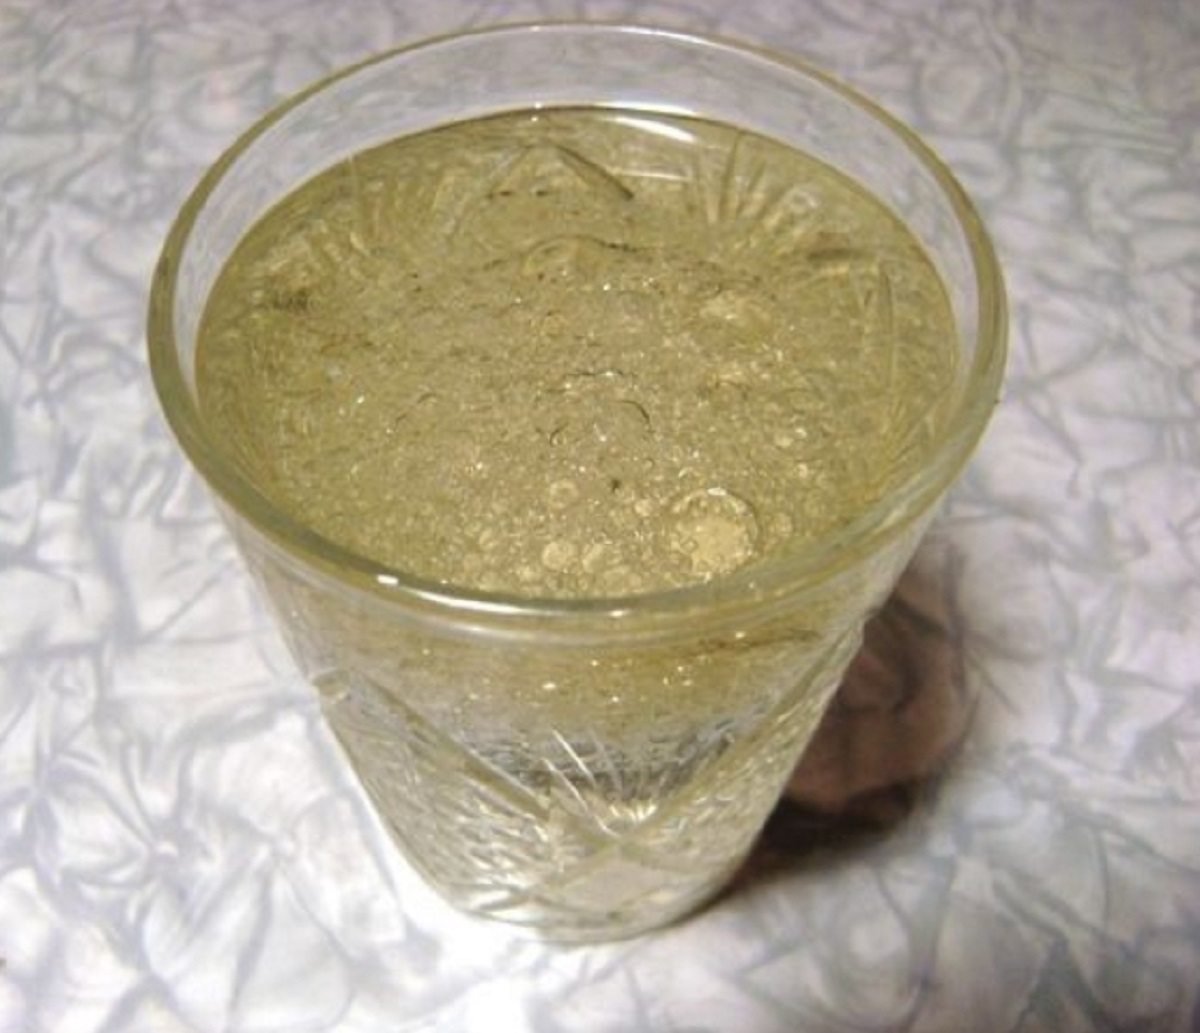 Мука 2 стакана воды. Растительное масло в стакане. Непонятная жижа в стакане. Тесто в стакане. Стакан с водой и растительным маслом.